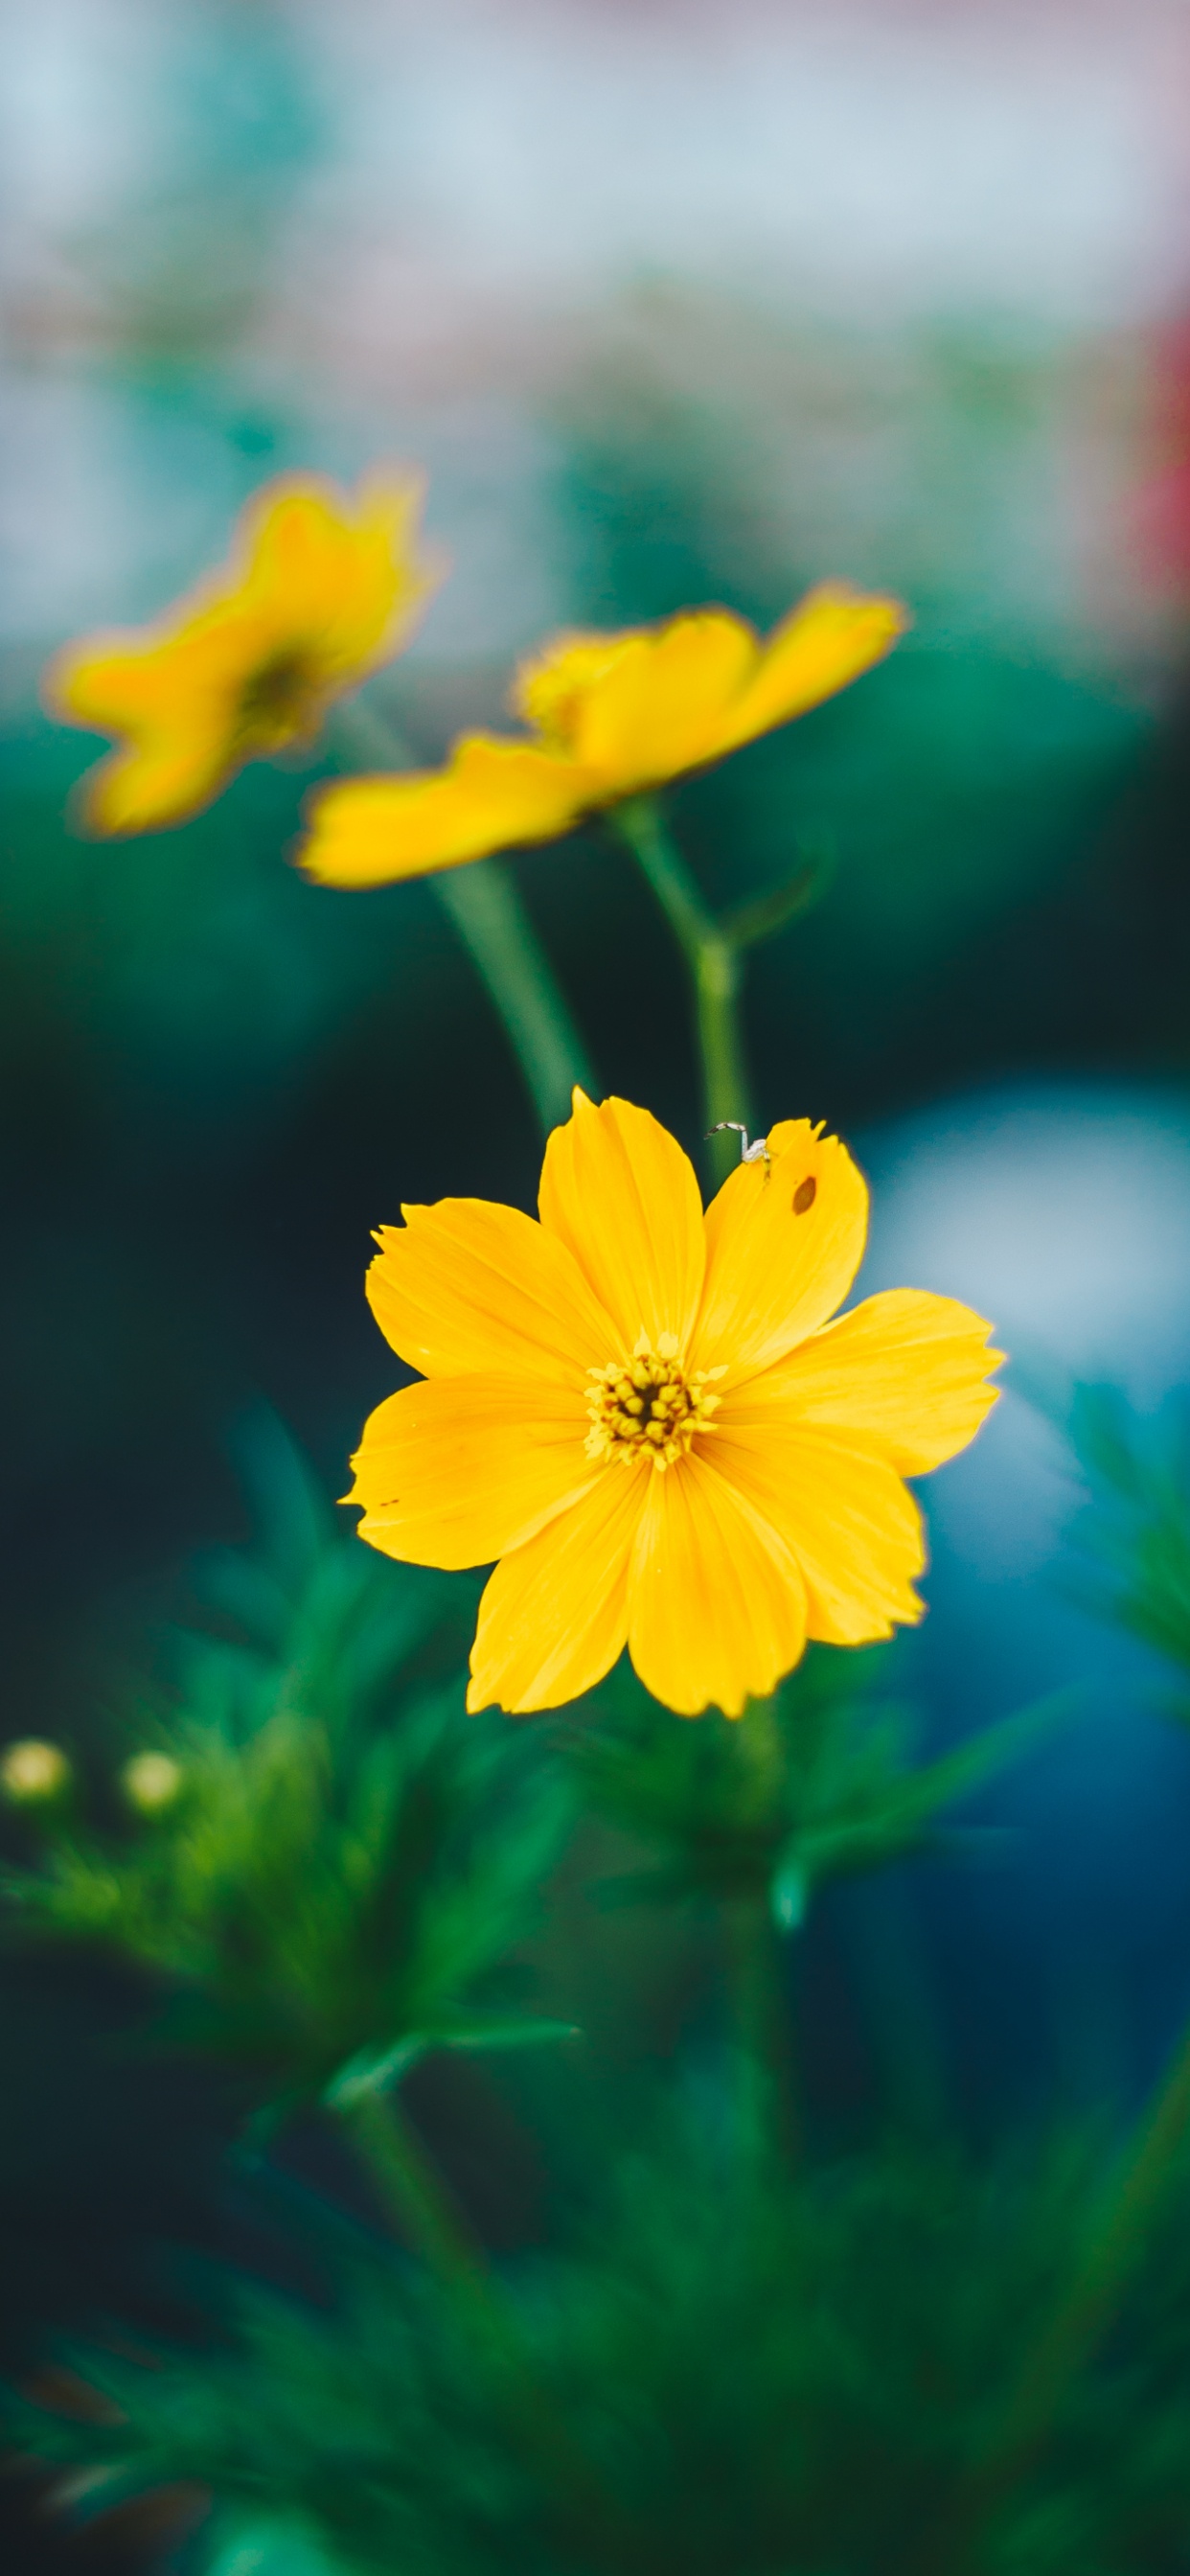 Yellow Flower in Tilt Shift Lens. Wallpaper in 1242x2688 Resolution